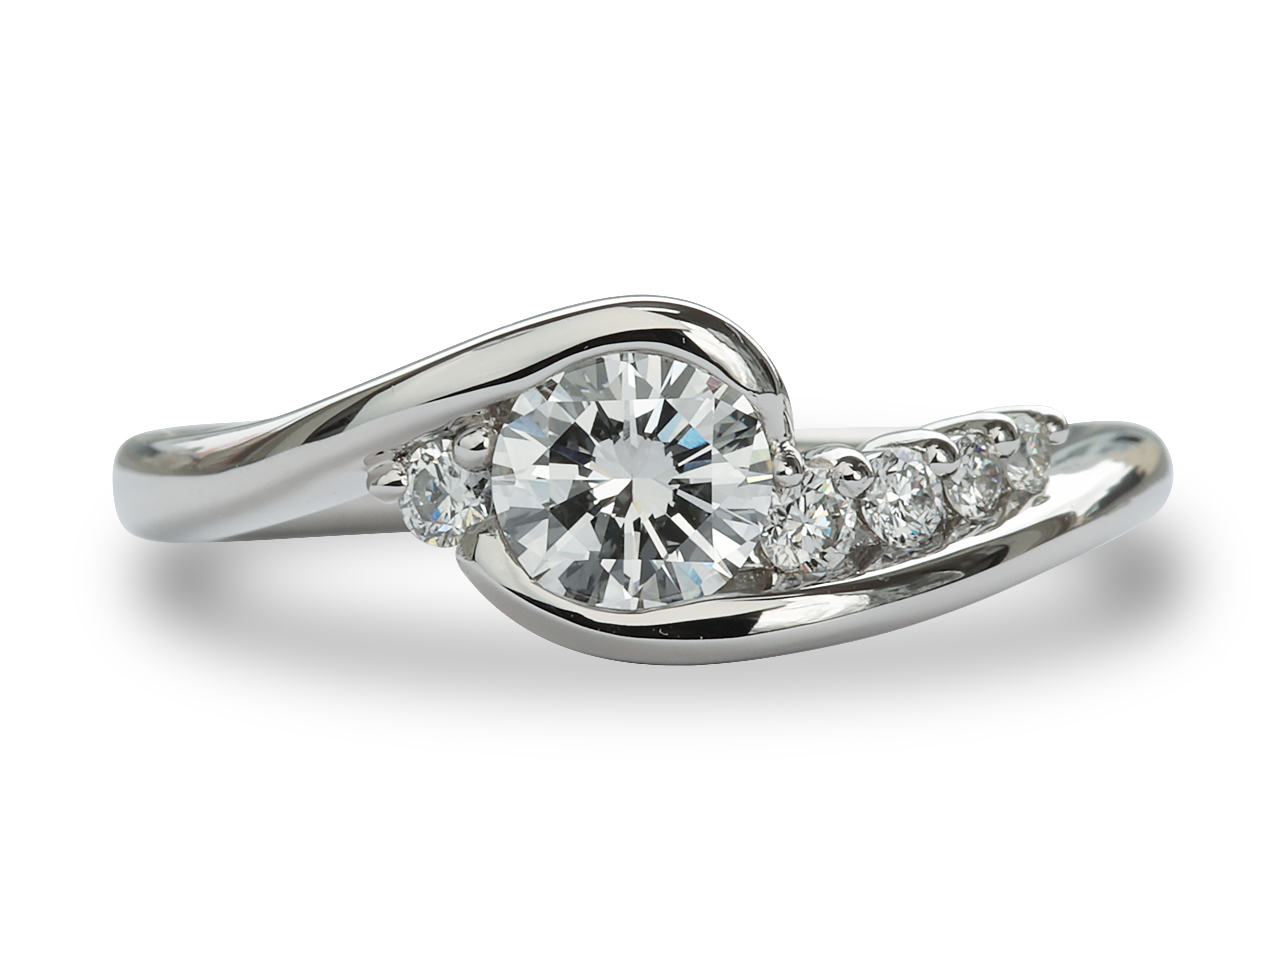 【12372話】30年の証、婚約指輪のダイヤを娘の結婚式で輝かせるリフォーム